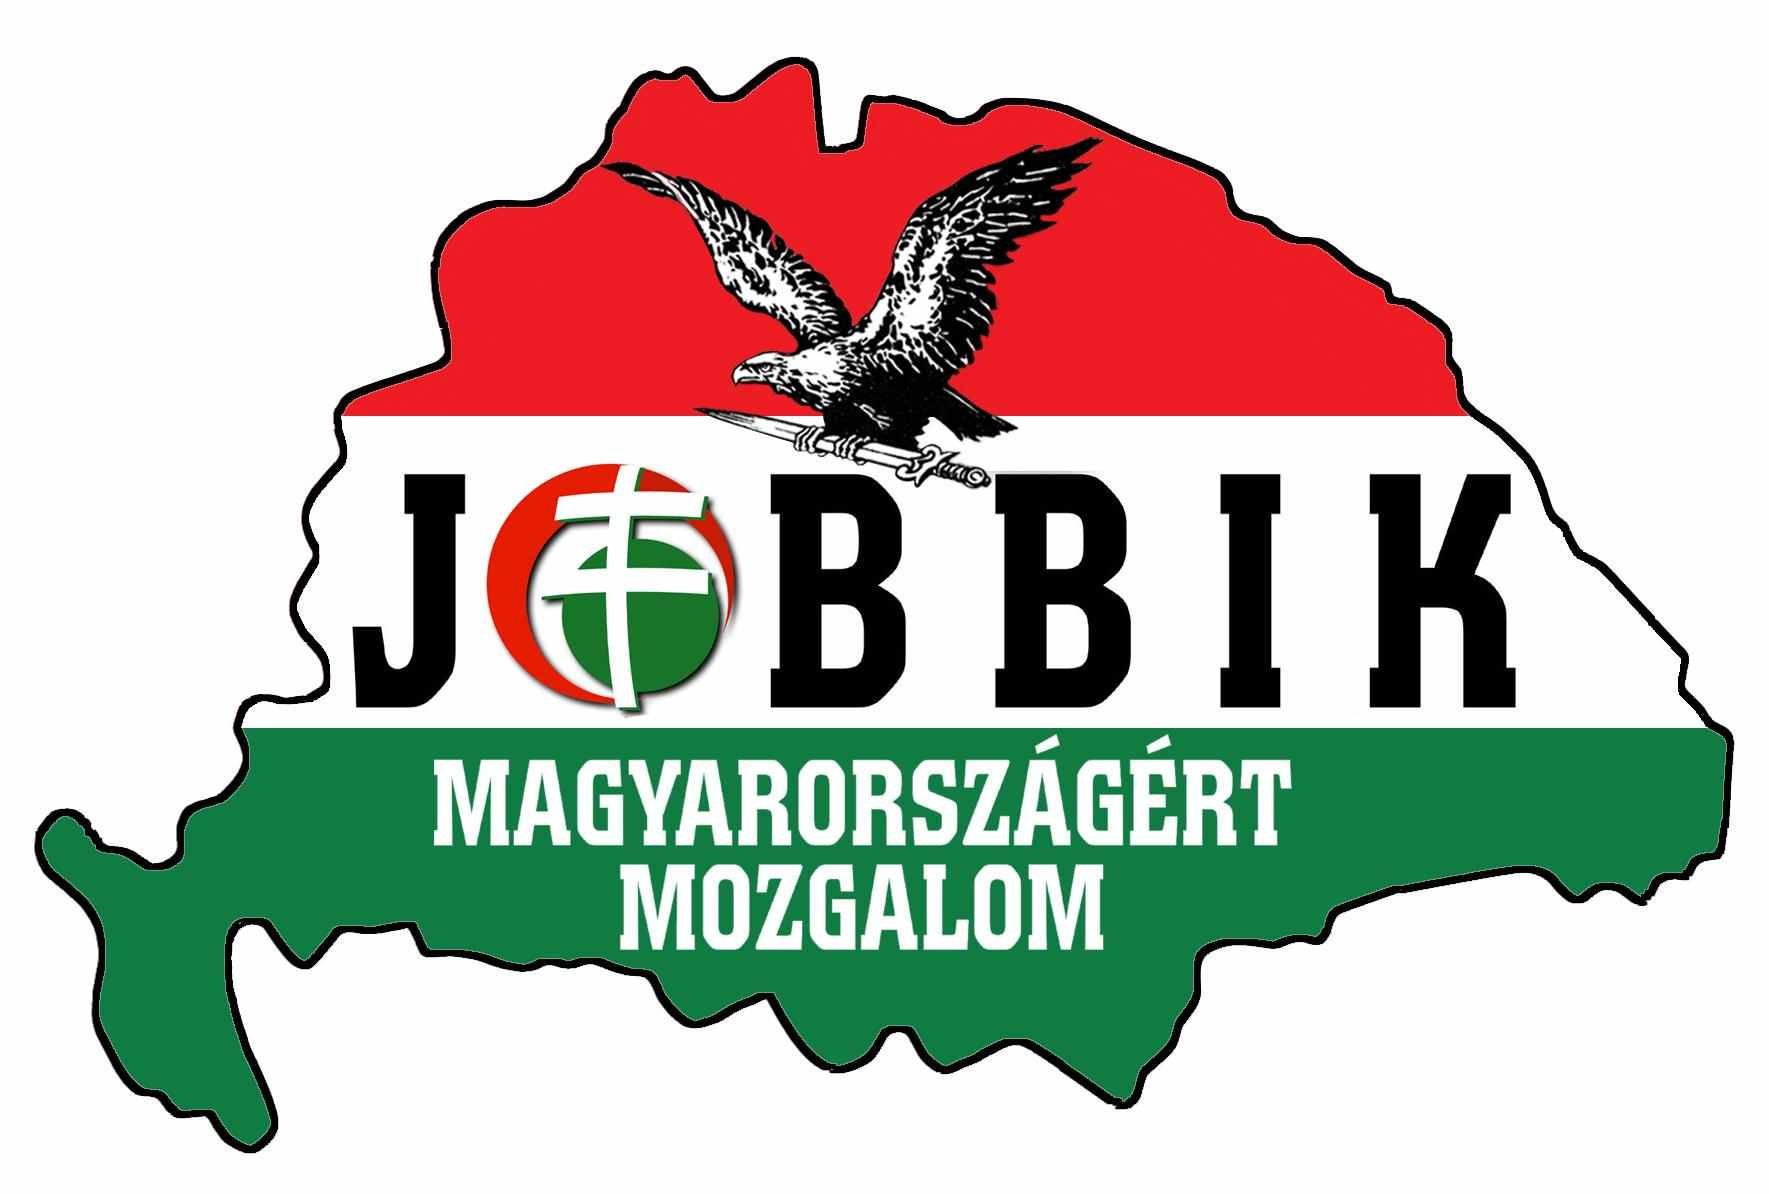 Update: Stummer Quits Jobbik